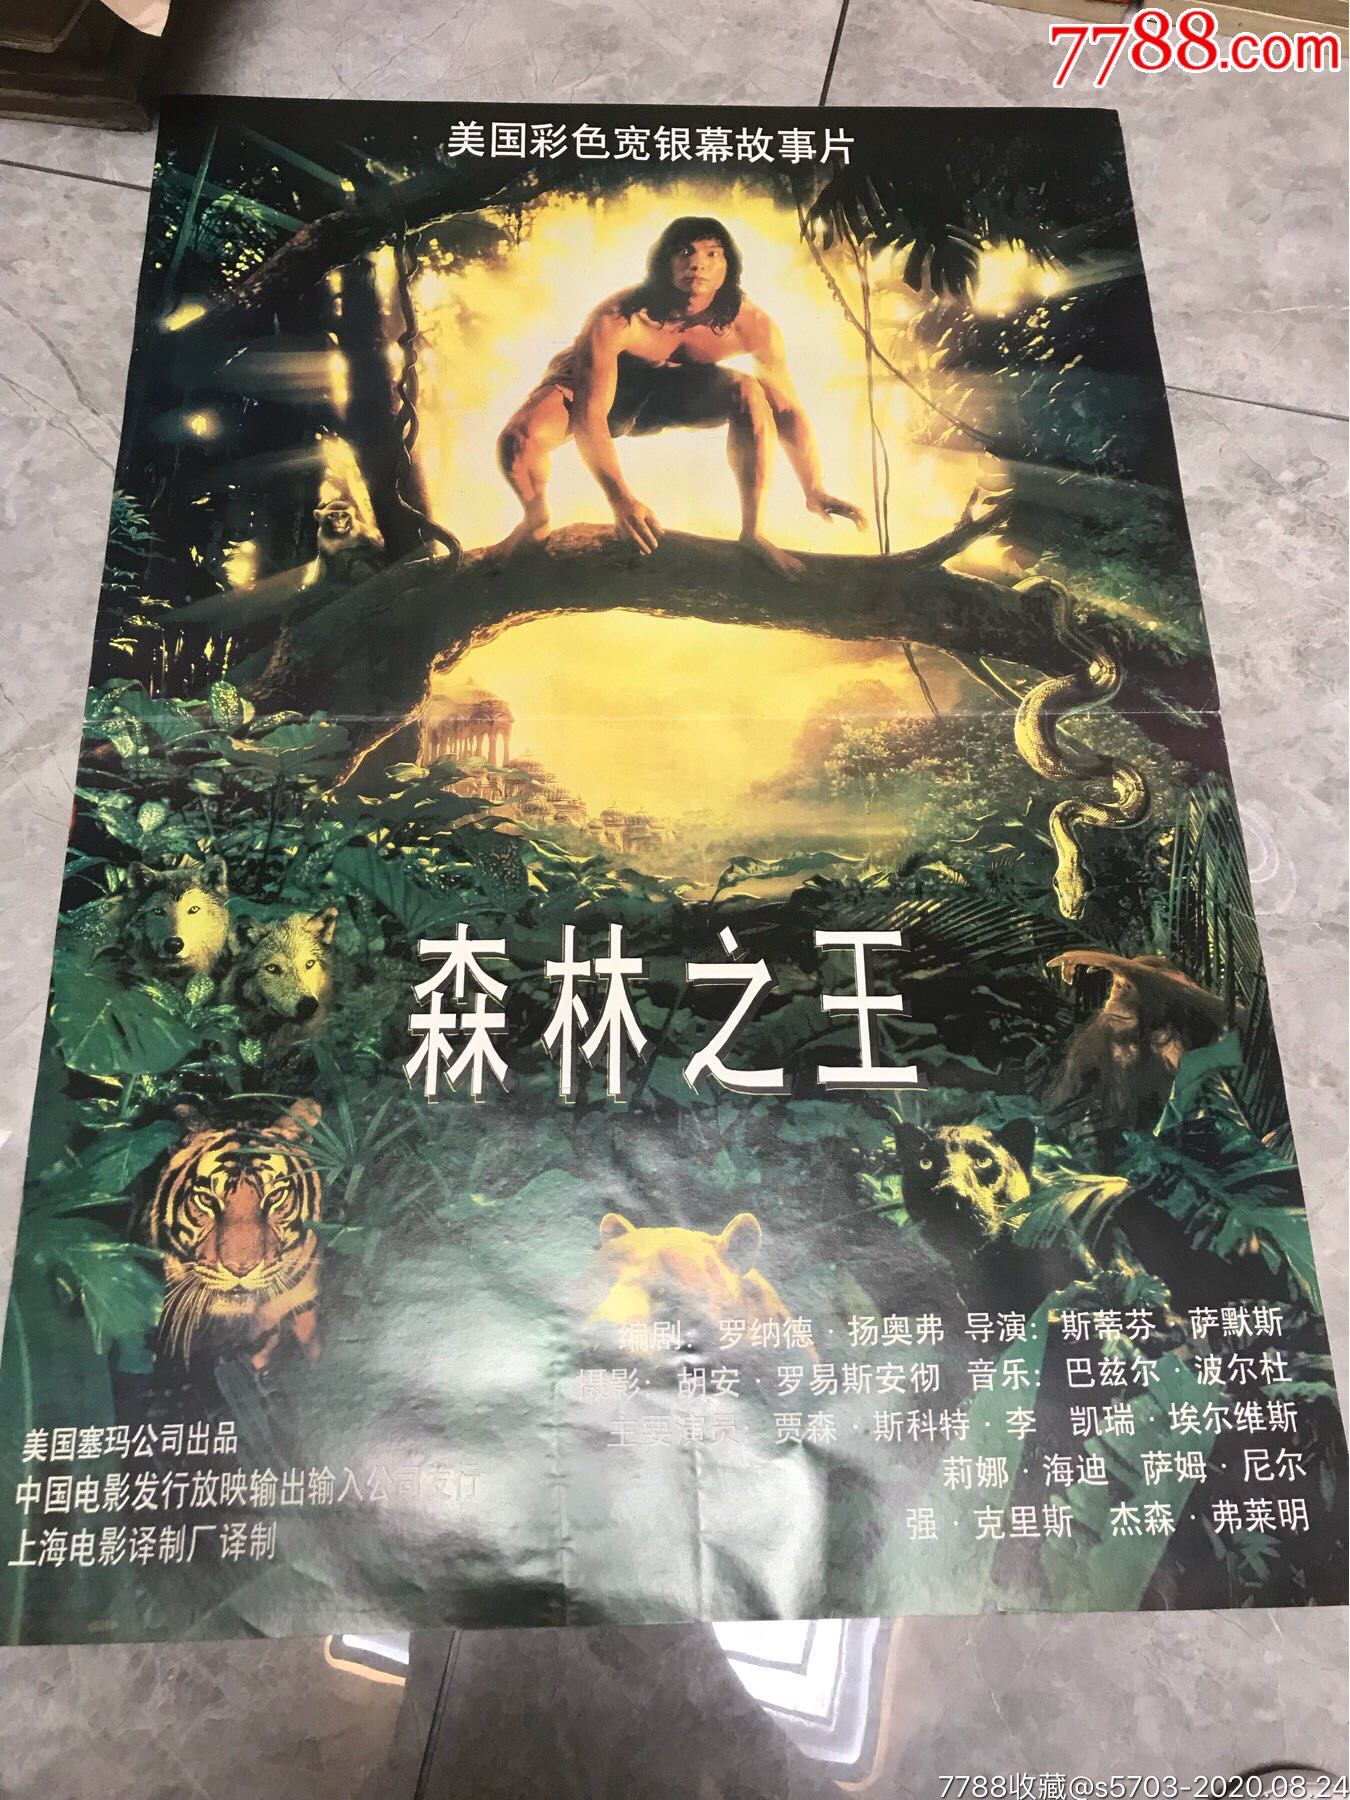 森林之王-价格:10.0000元-au24030082-电影海报 -加价